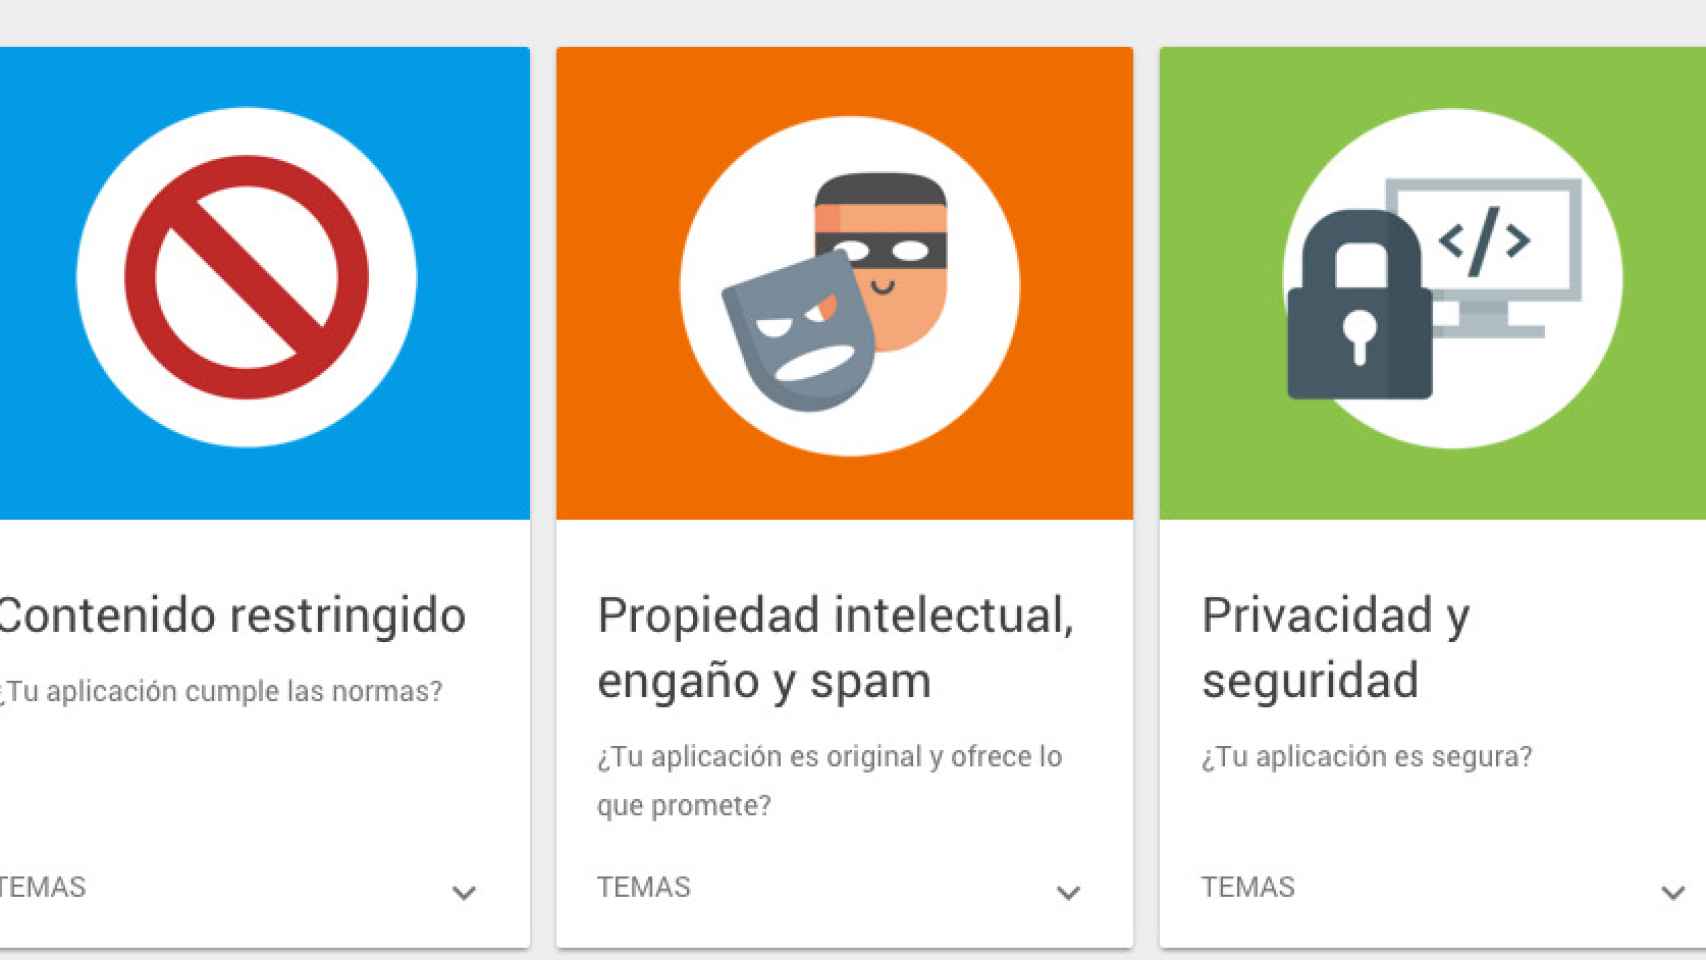 Google Play prohibe los adblocks, excepto los integrados en navegadores